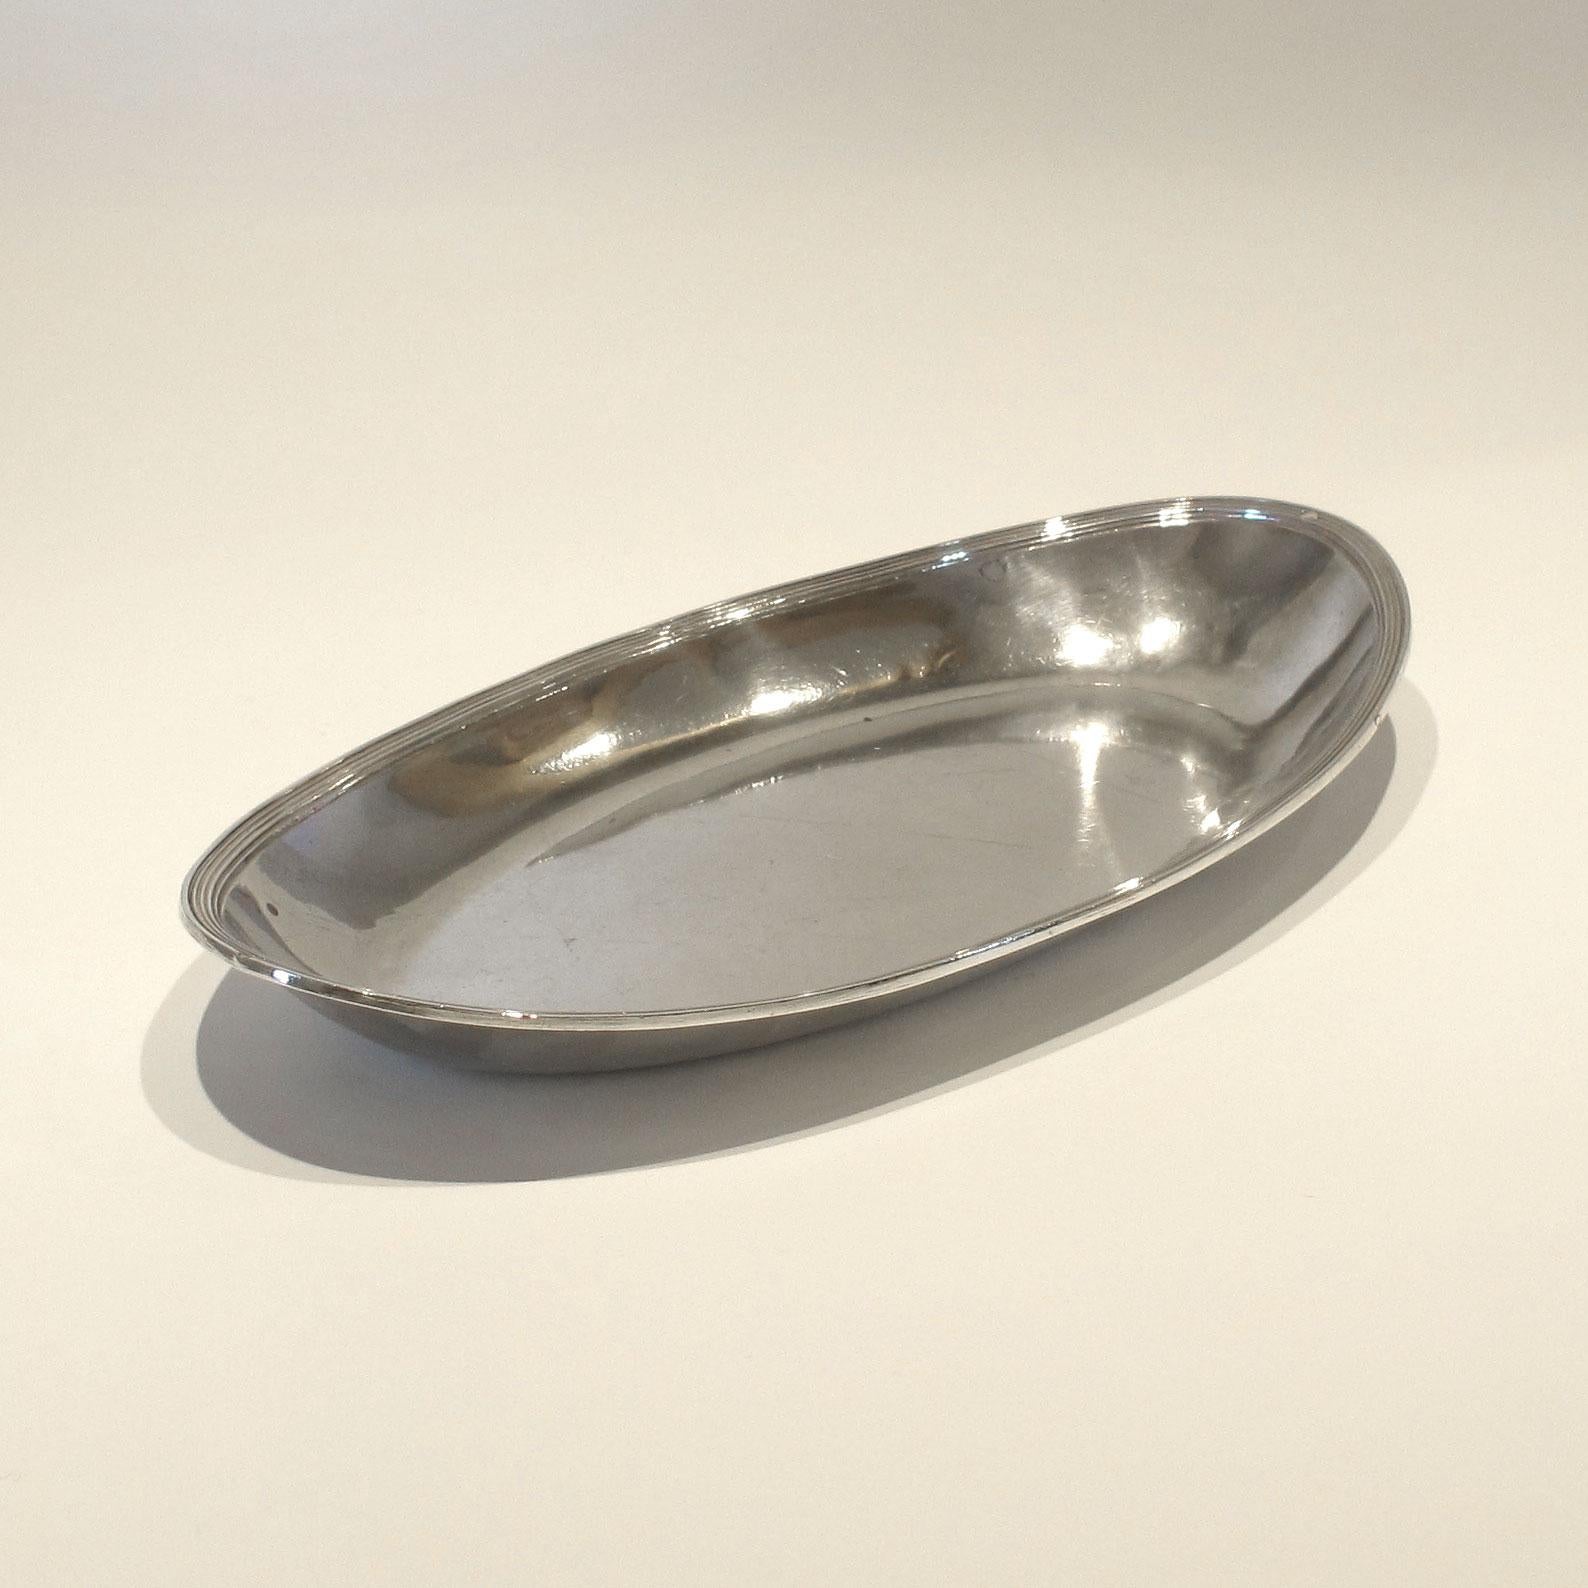 Ovale Schale oder Tablett aus kontinentalem Silber - perfekt zum Servieren von Getränken oder als Schminktisch-Tablett.